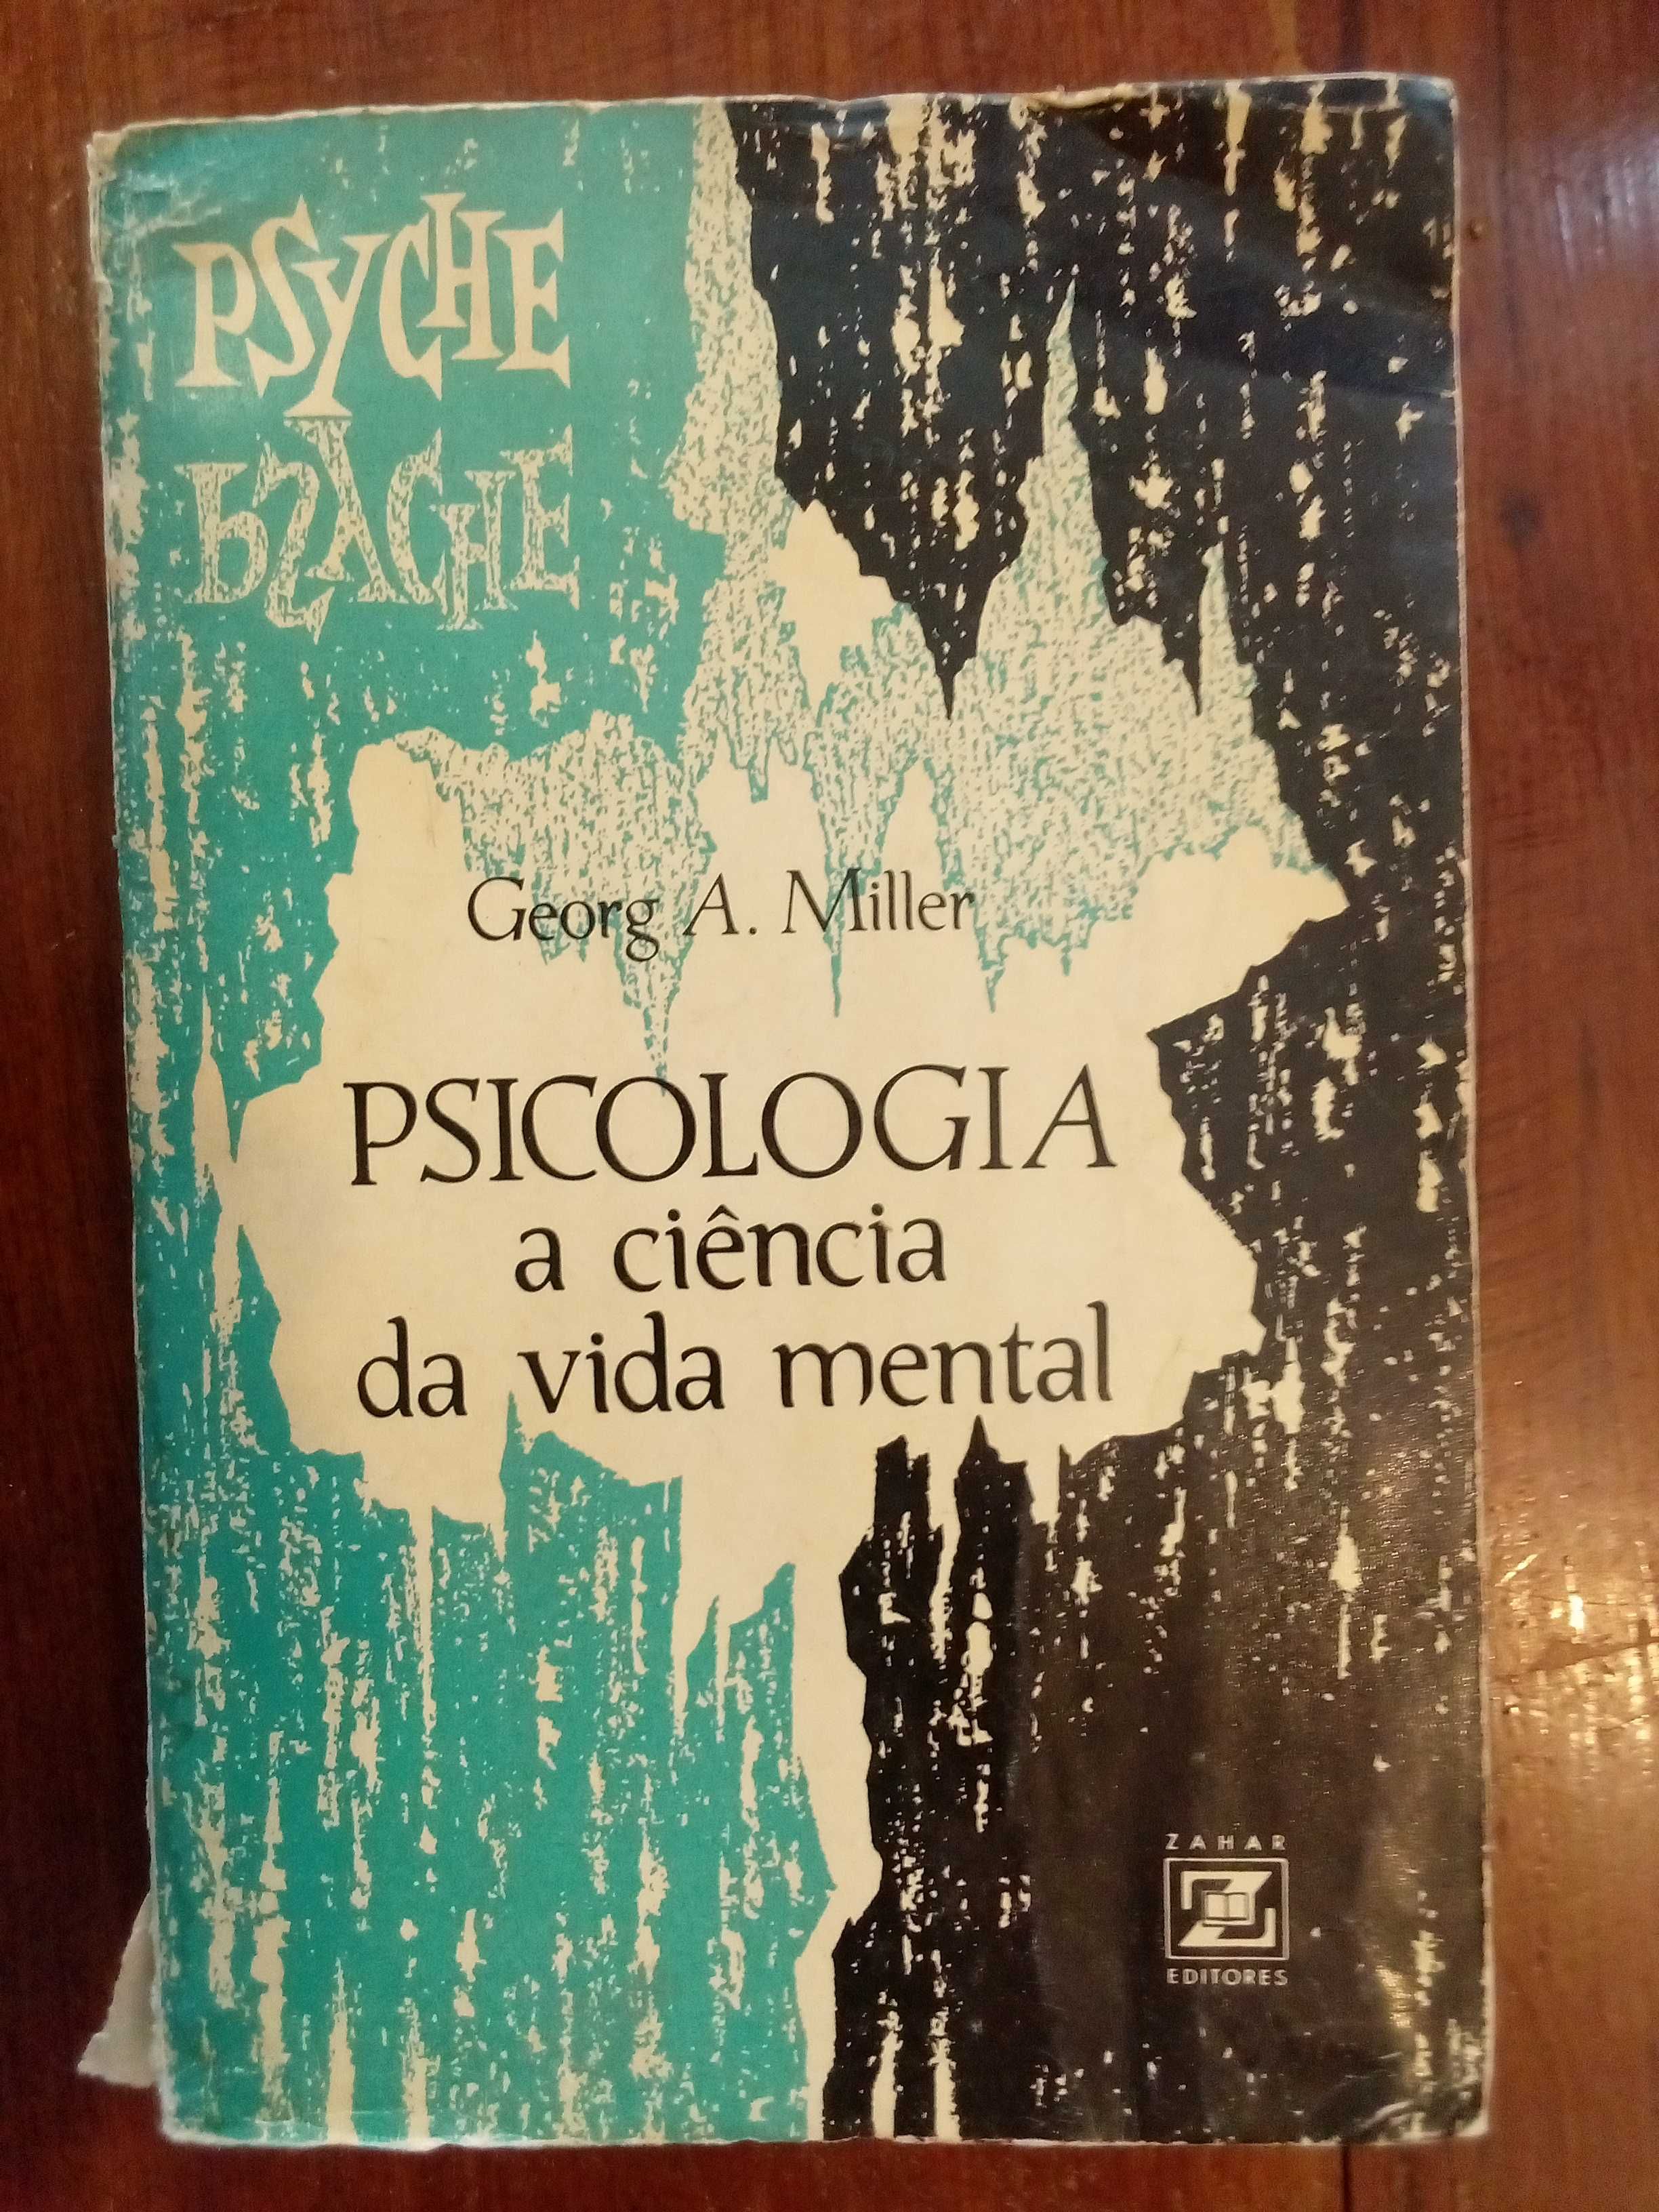 Georg A. Miller - Psicologia, a ciência da vida mental